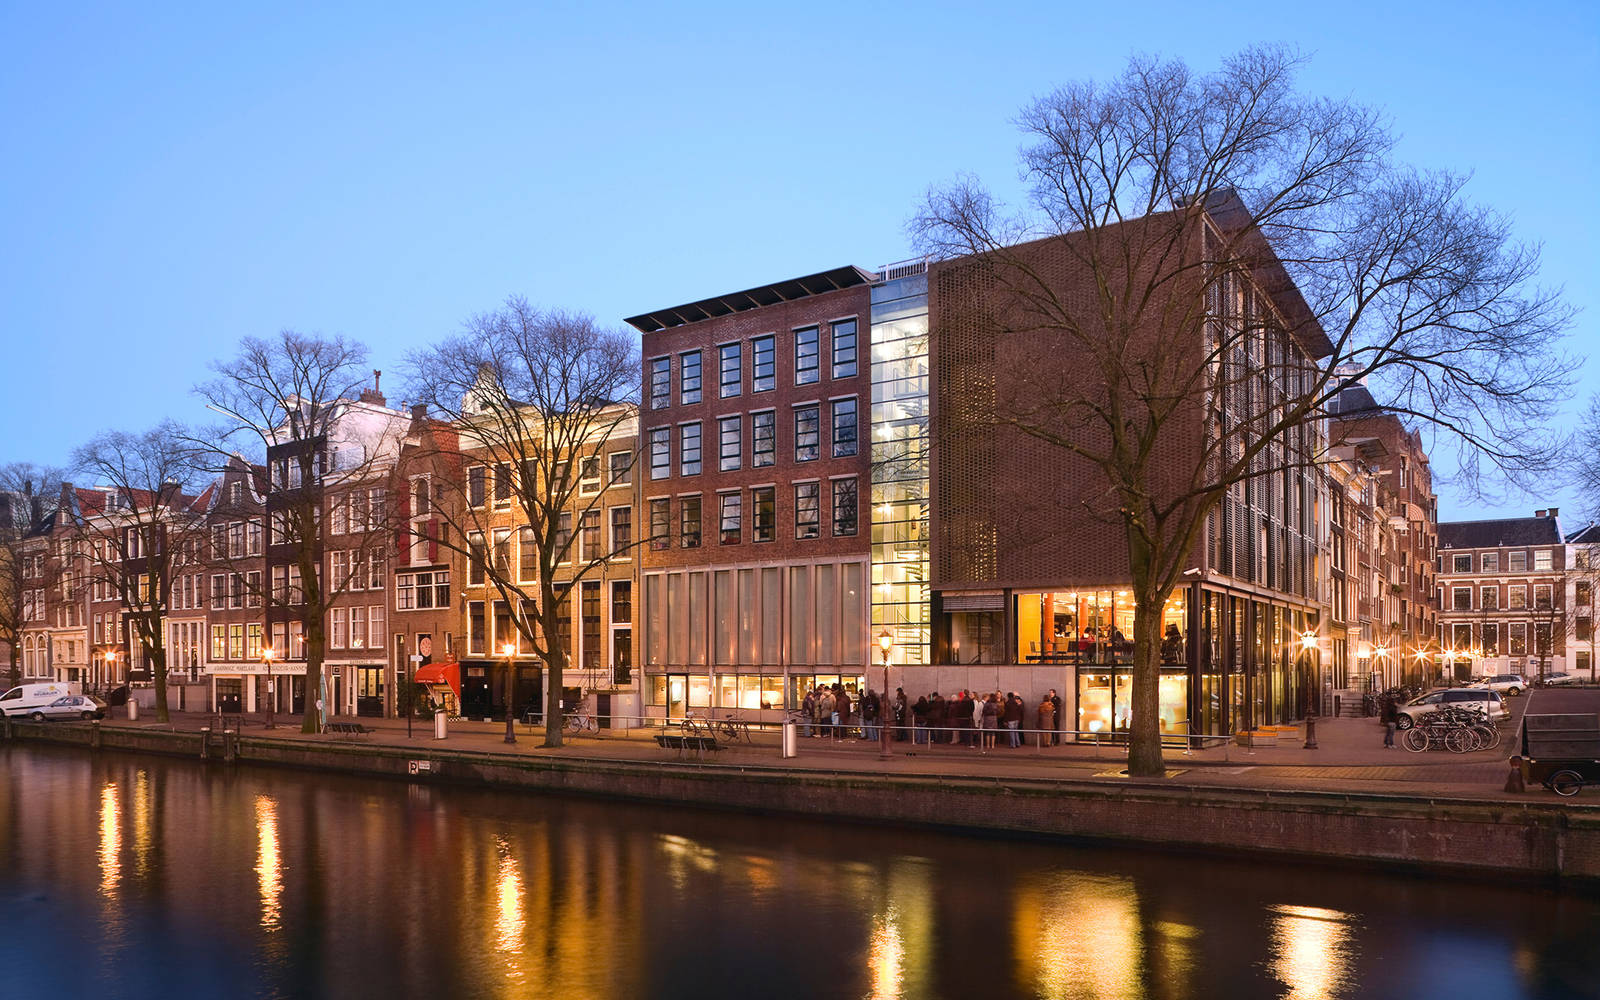 Netherlands Anne Franks House Background